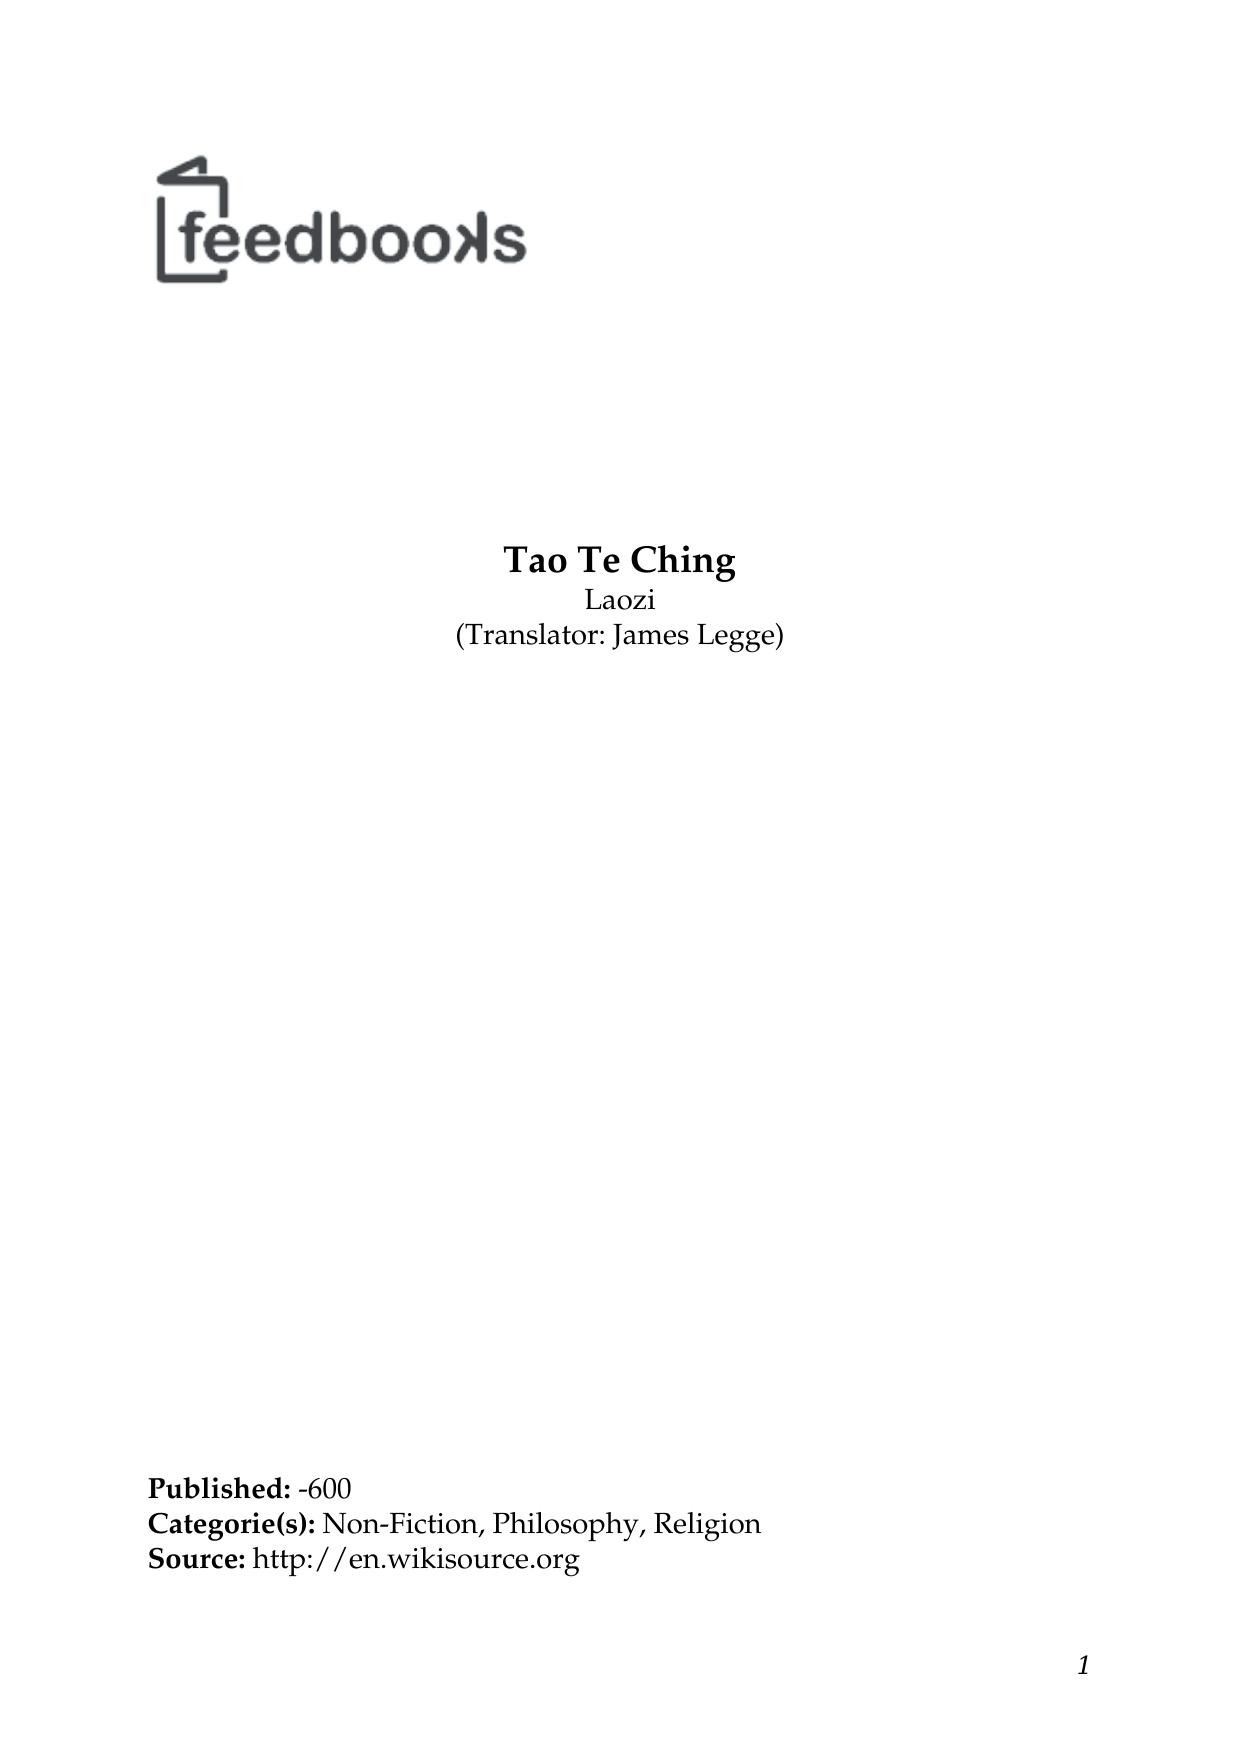 Tao Te Ching by Yuhui Liang